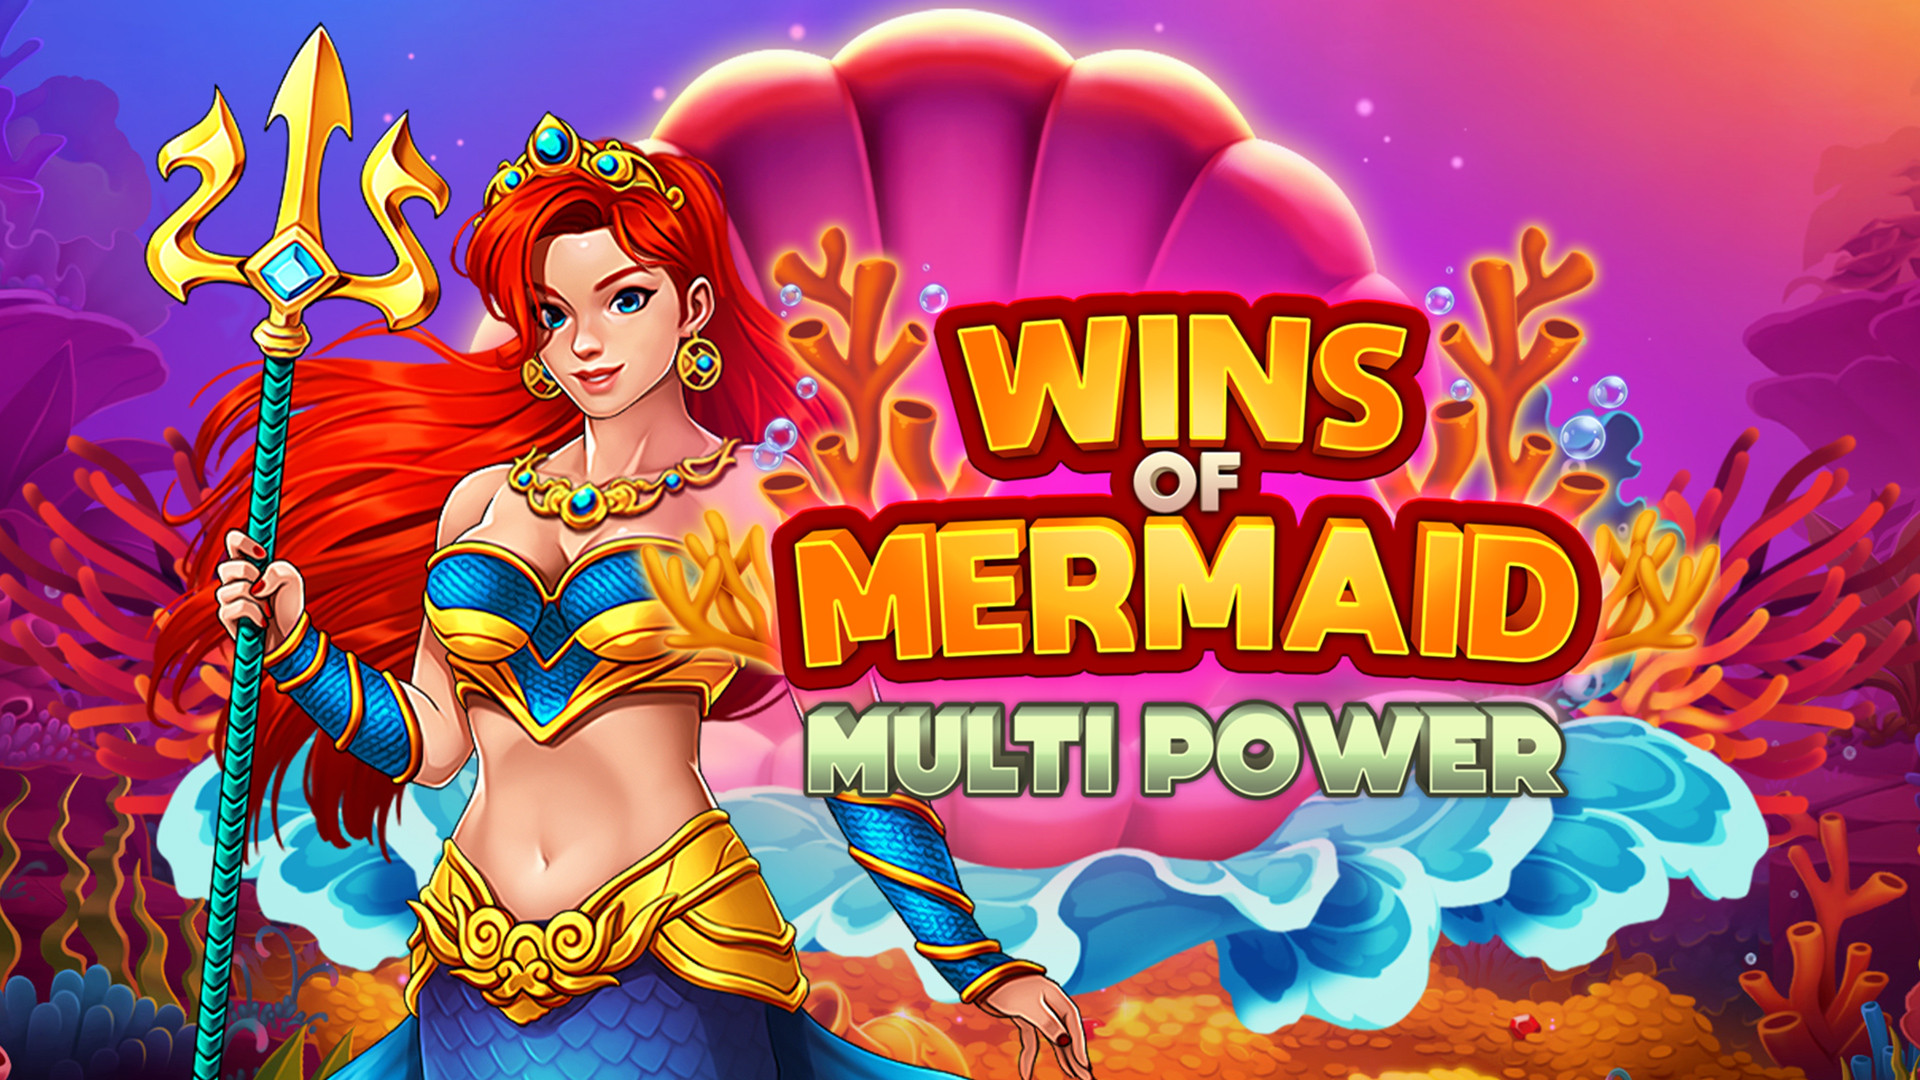 Wins Of Mermaid Multi Power